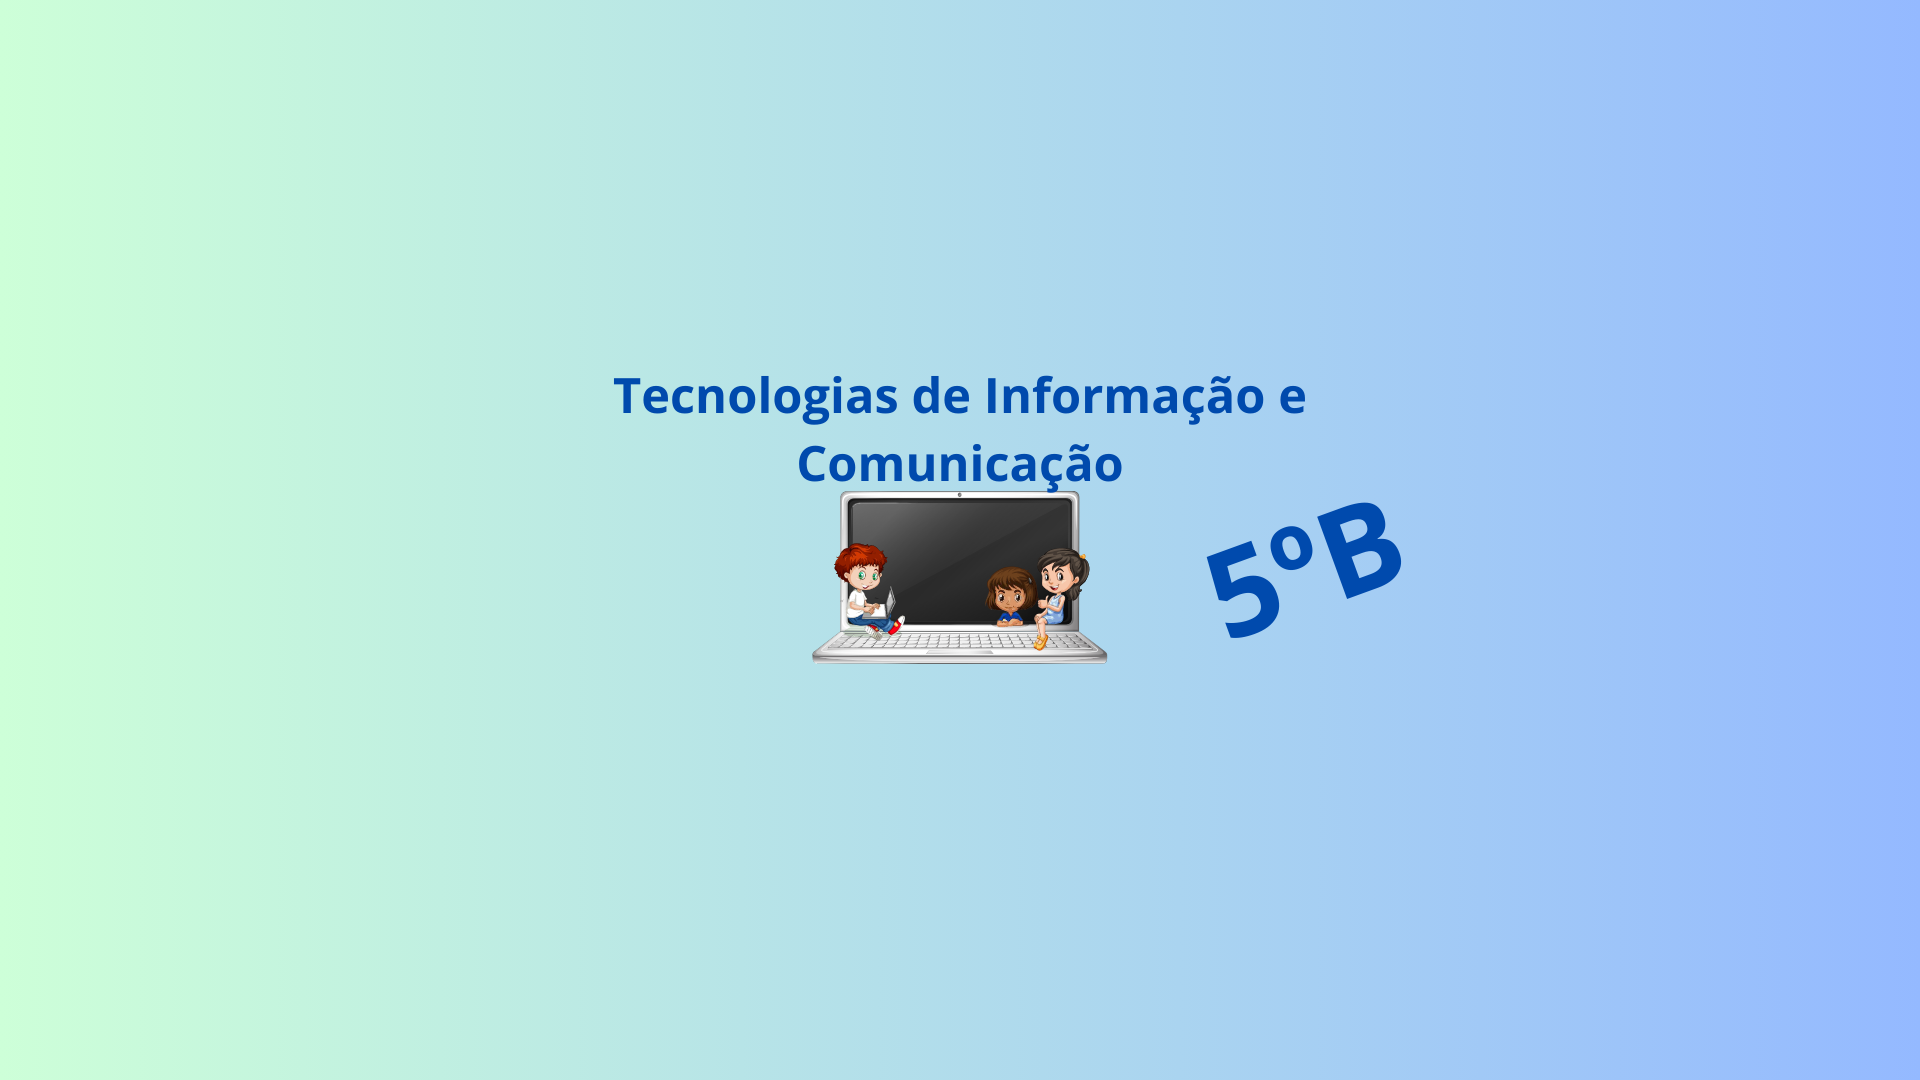 5B - Tecnologias de Informação e Comunicação